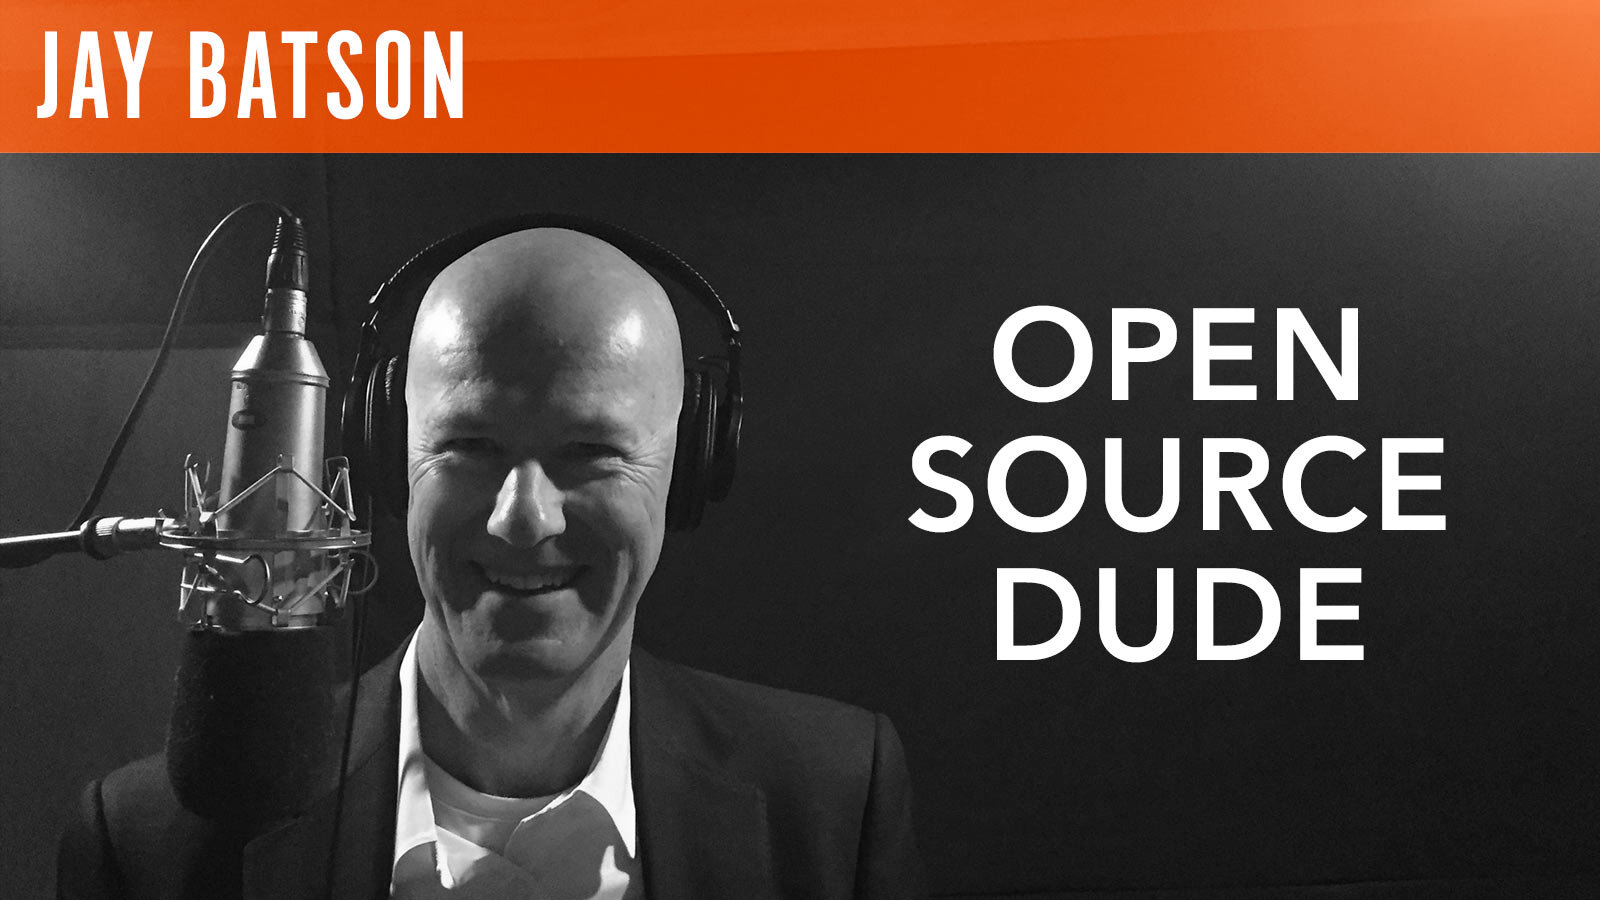 Jay Batson, "Open Source Dude"